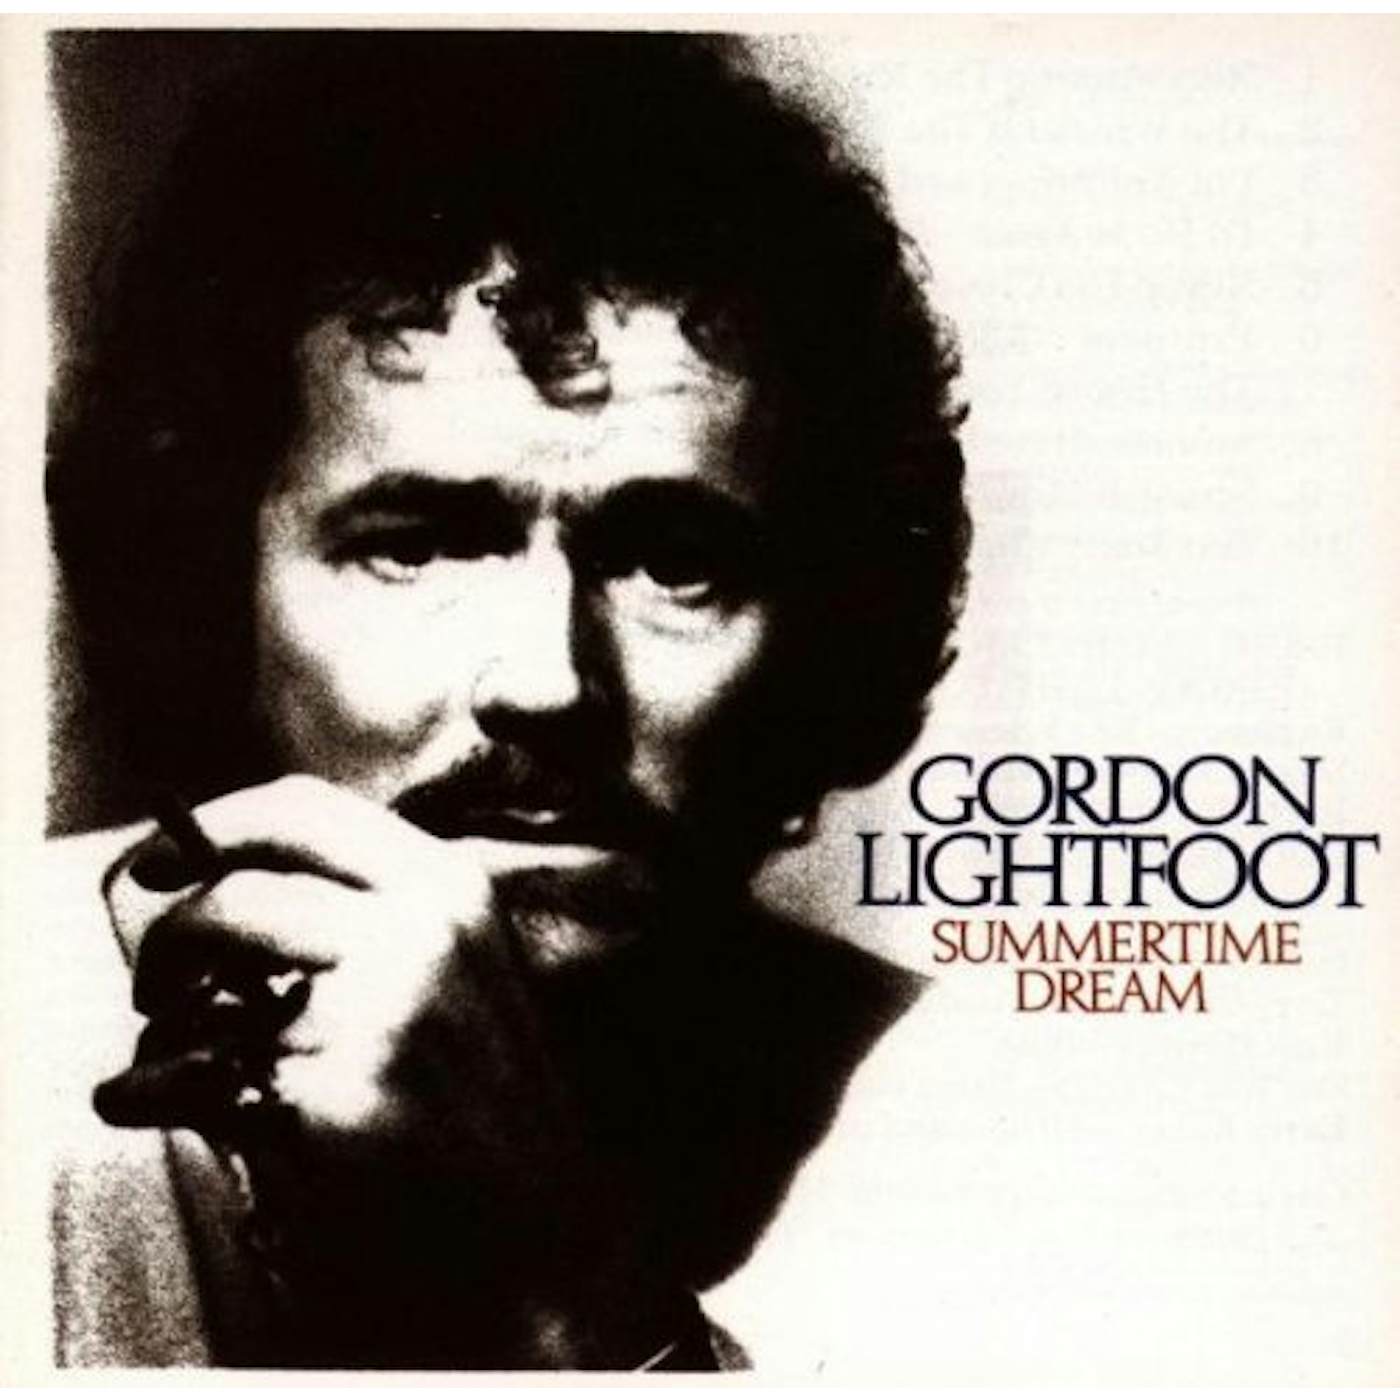 Gordon Lightfoot SUMMERTIME DREAM CD